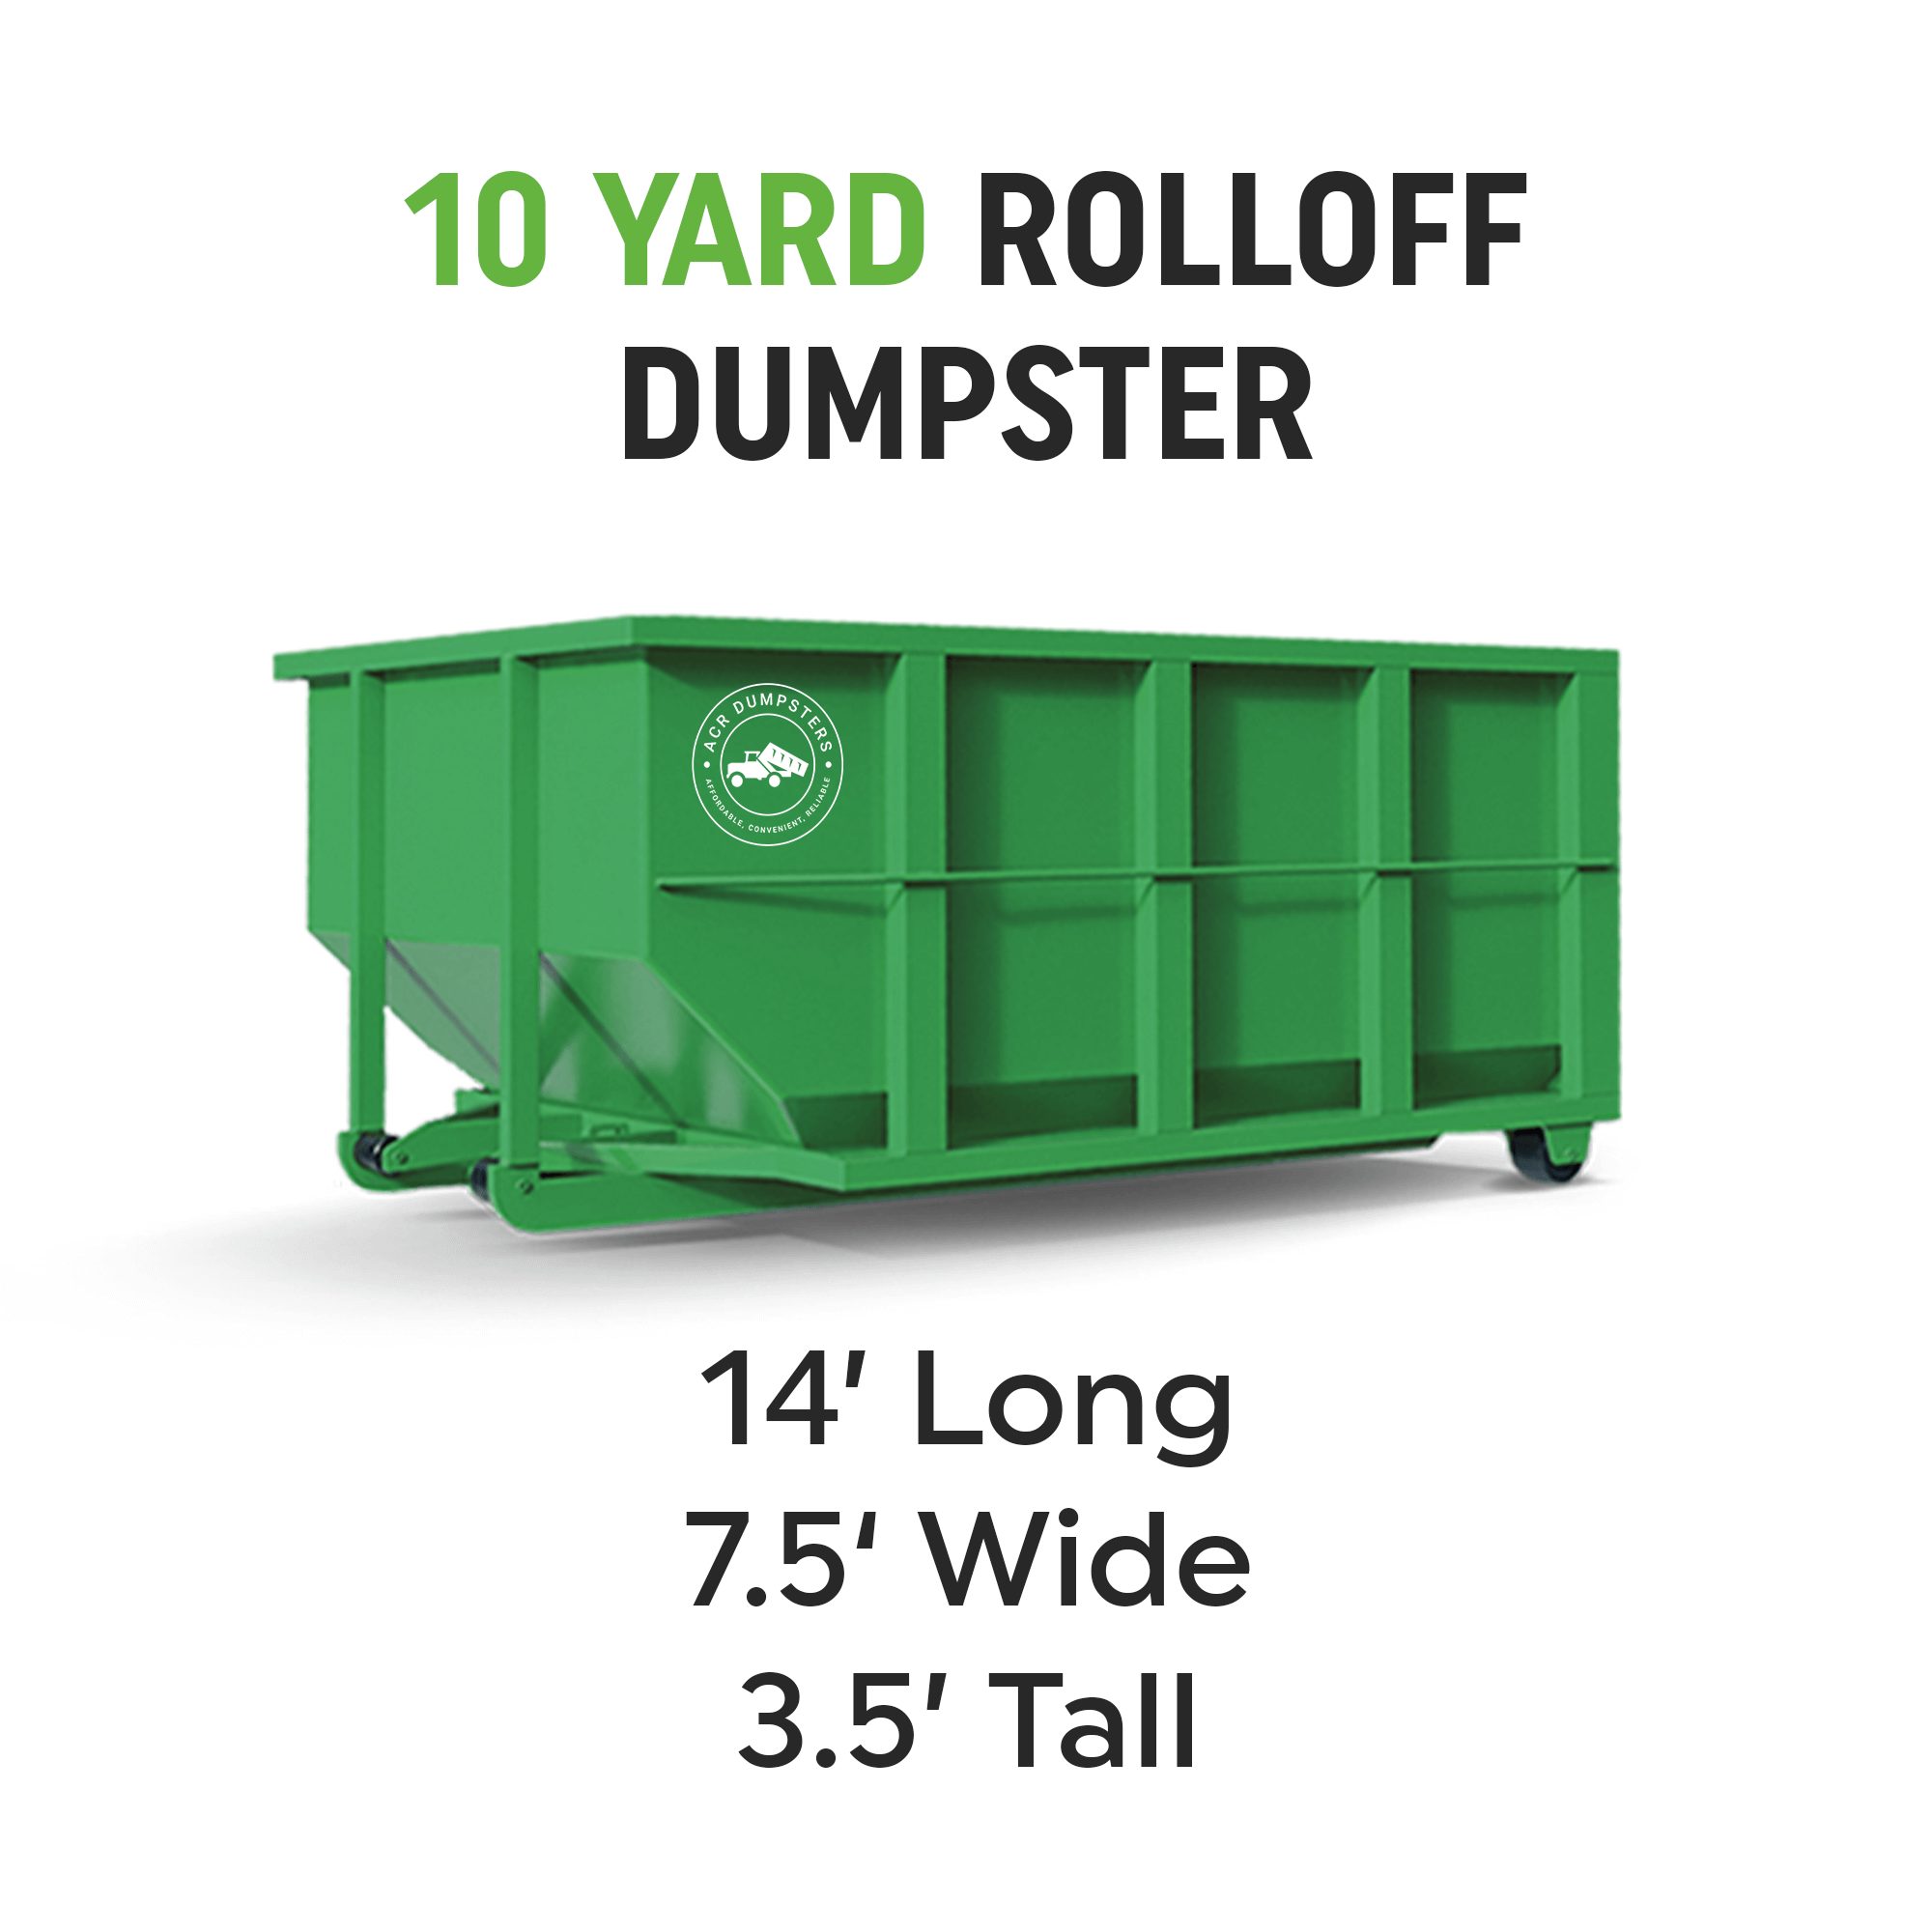 10 Yard Rolloff Dumpster 